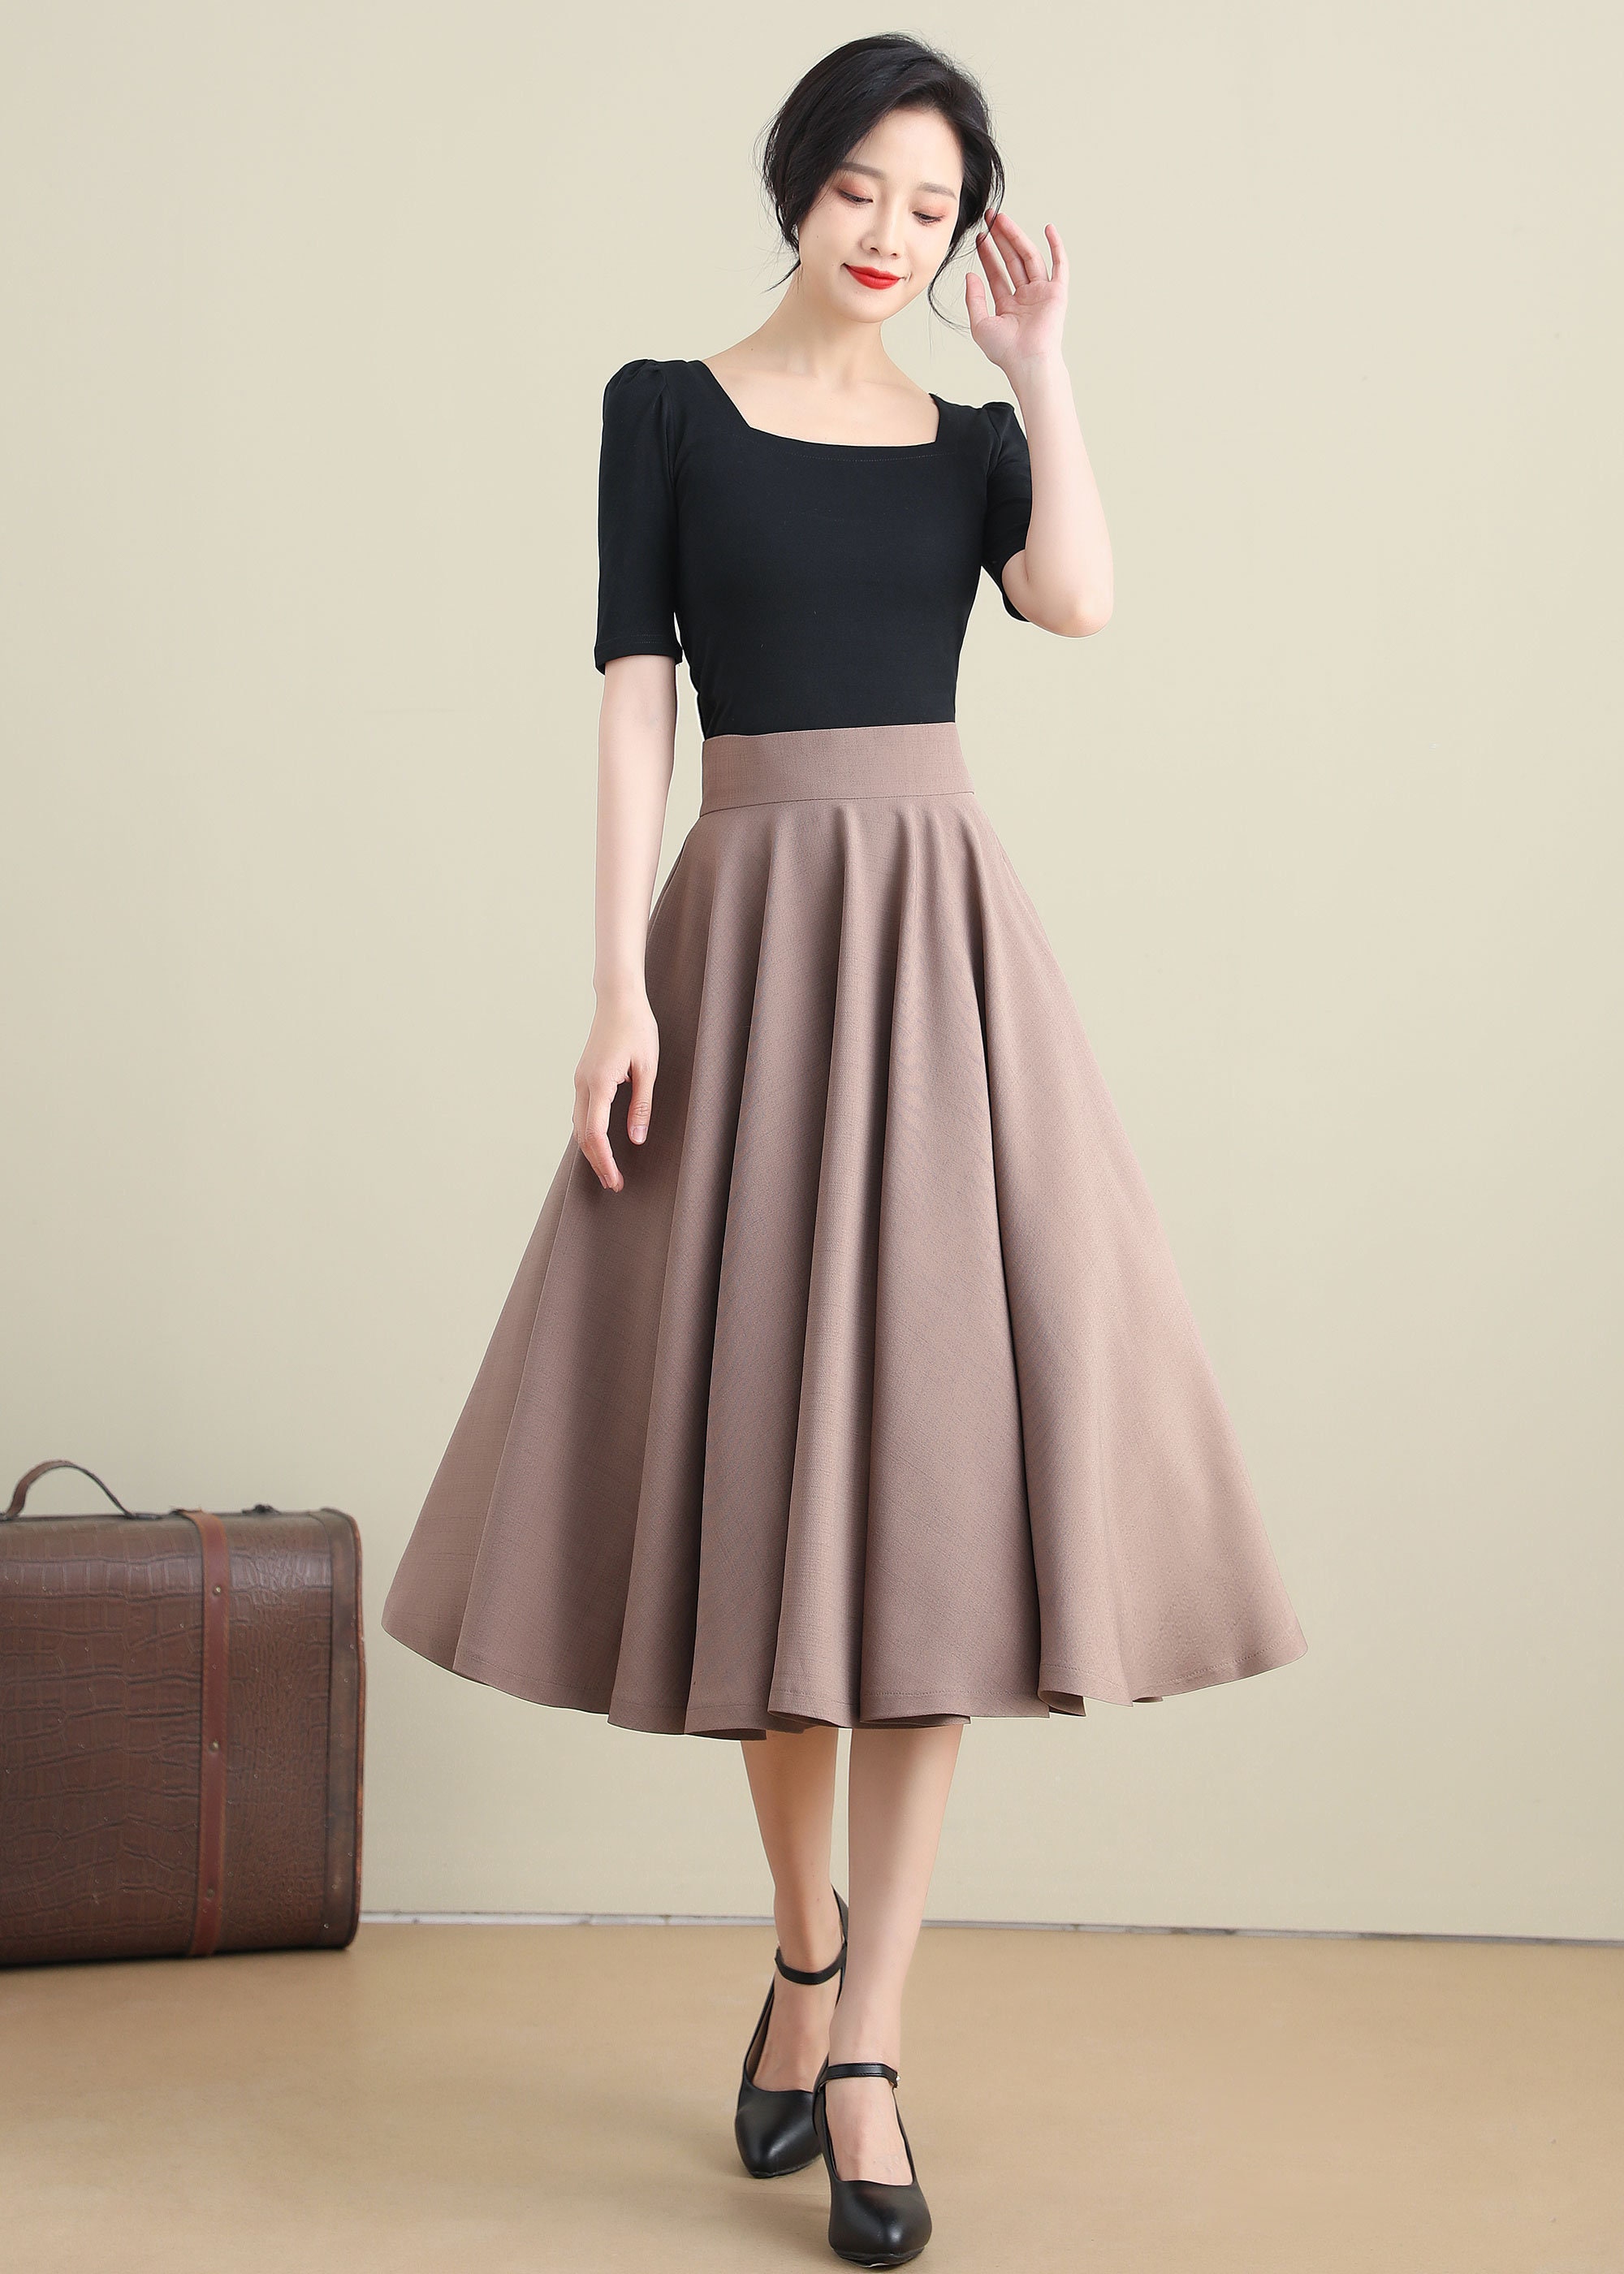 Khaki Swing Linen Skirt, A Line Full Skirt, High Waist Flared